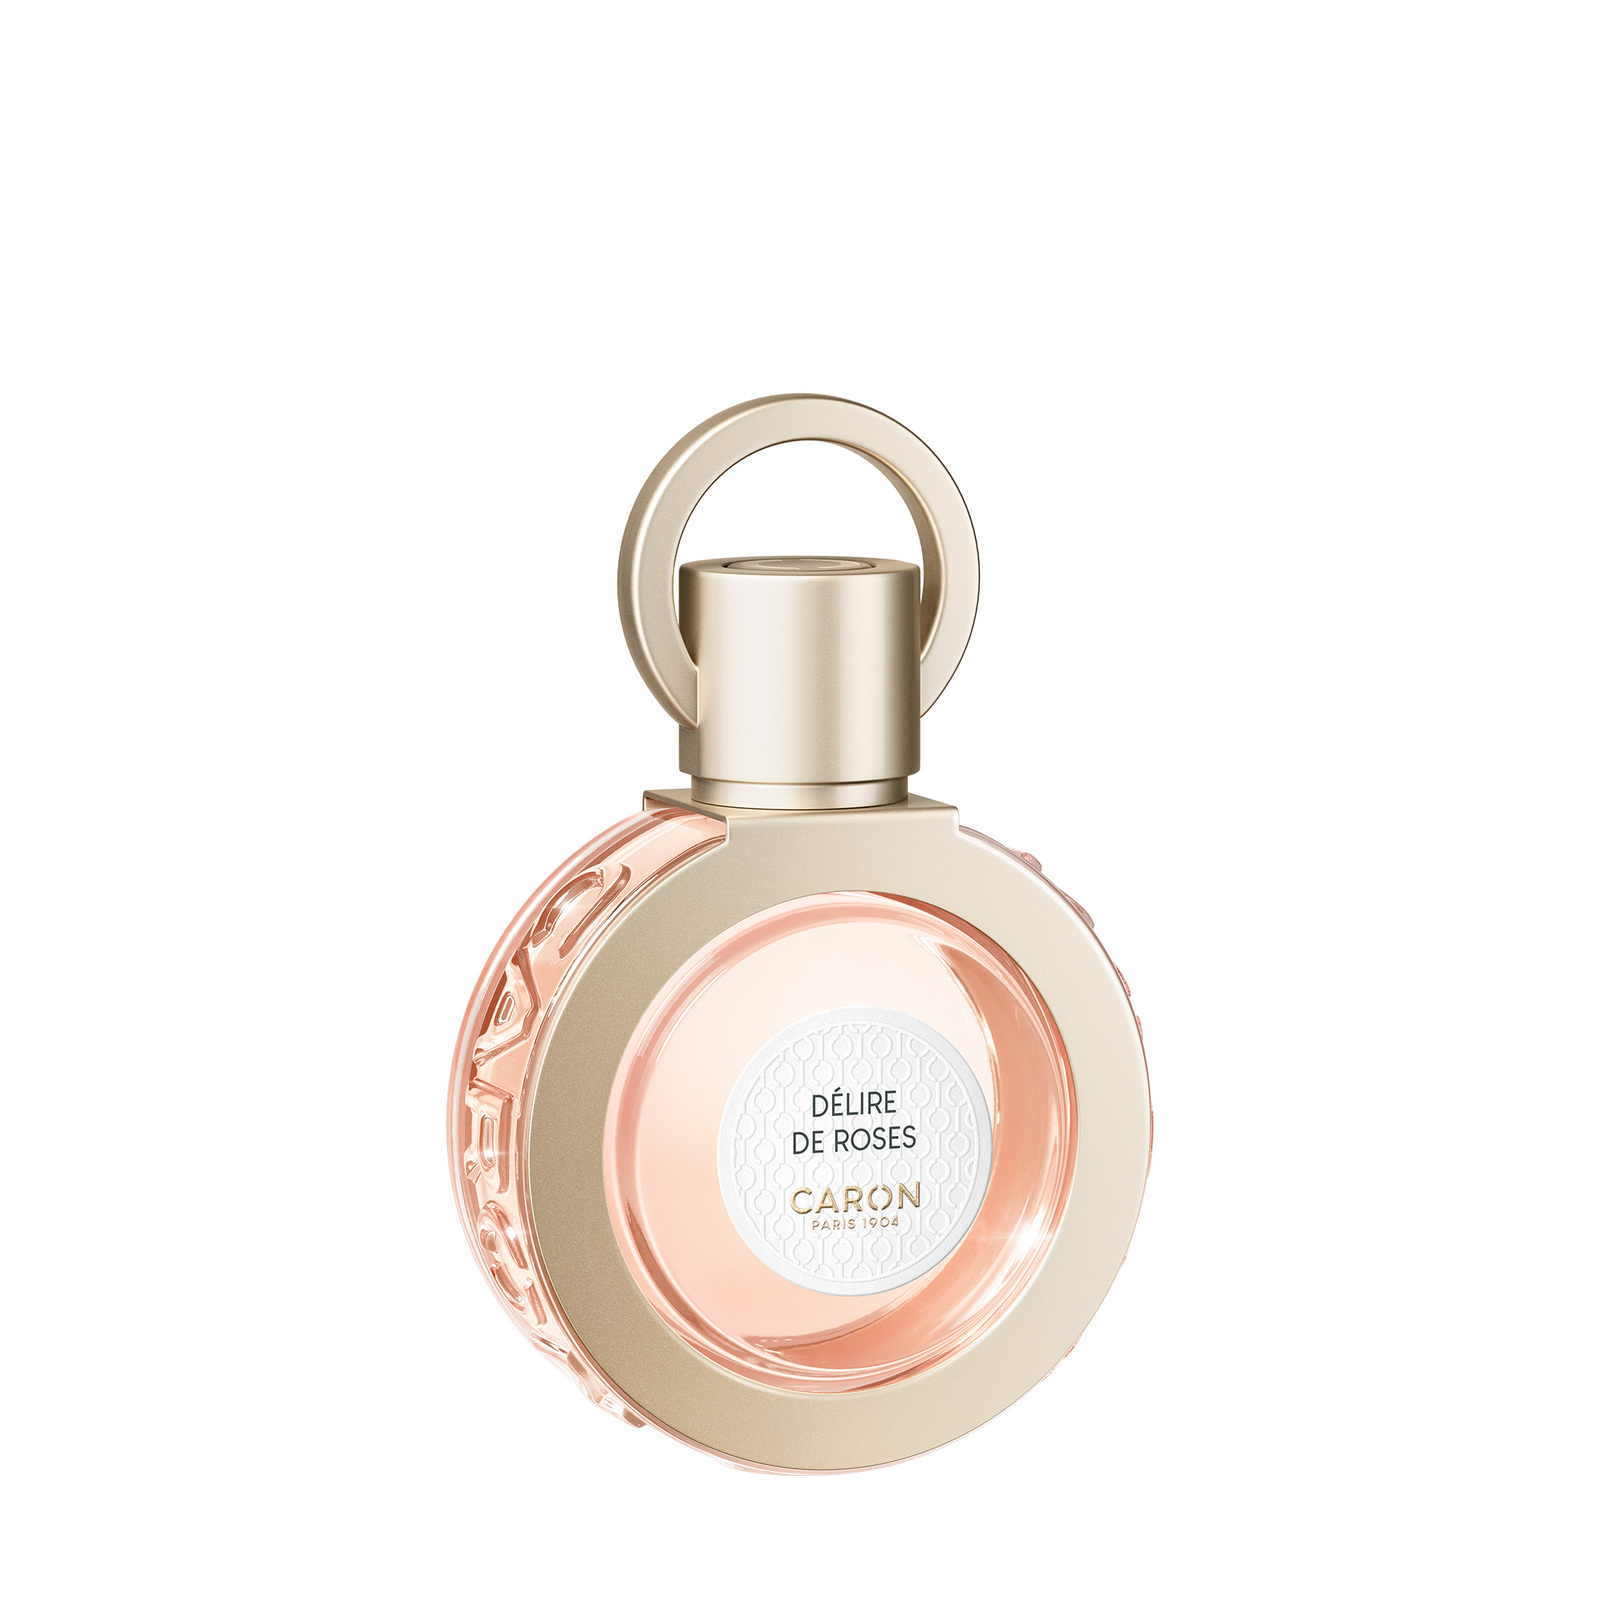 CARON Delire De Roses Perfume 30ml Refillable